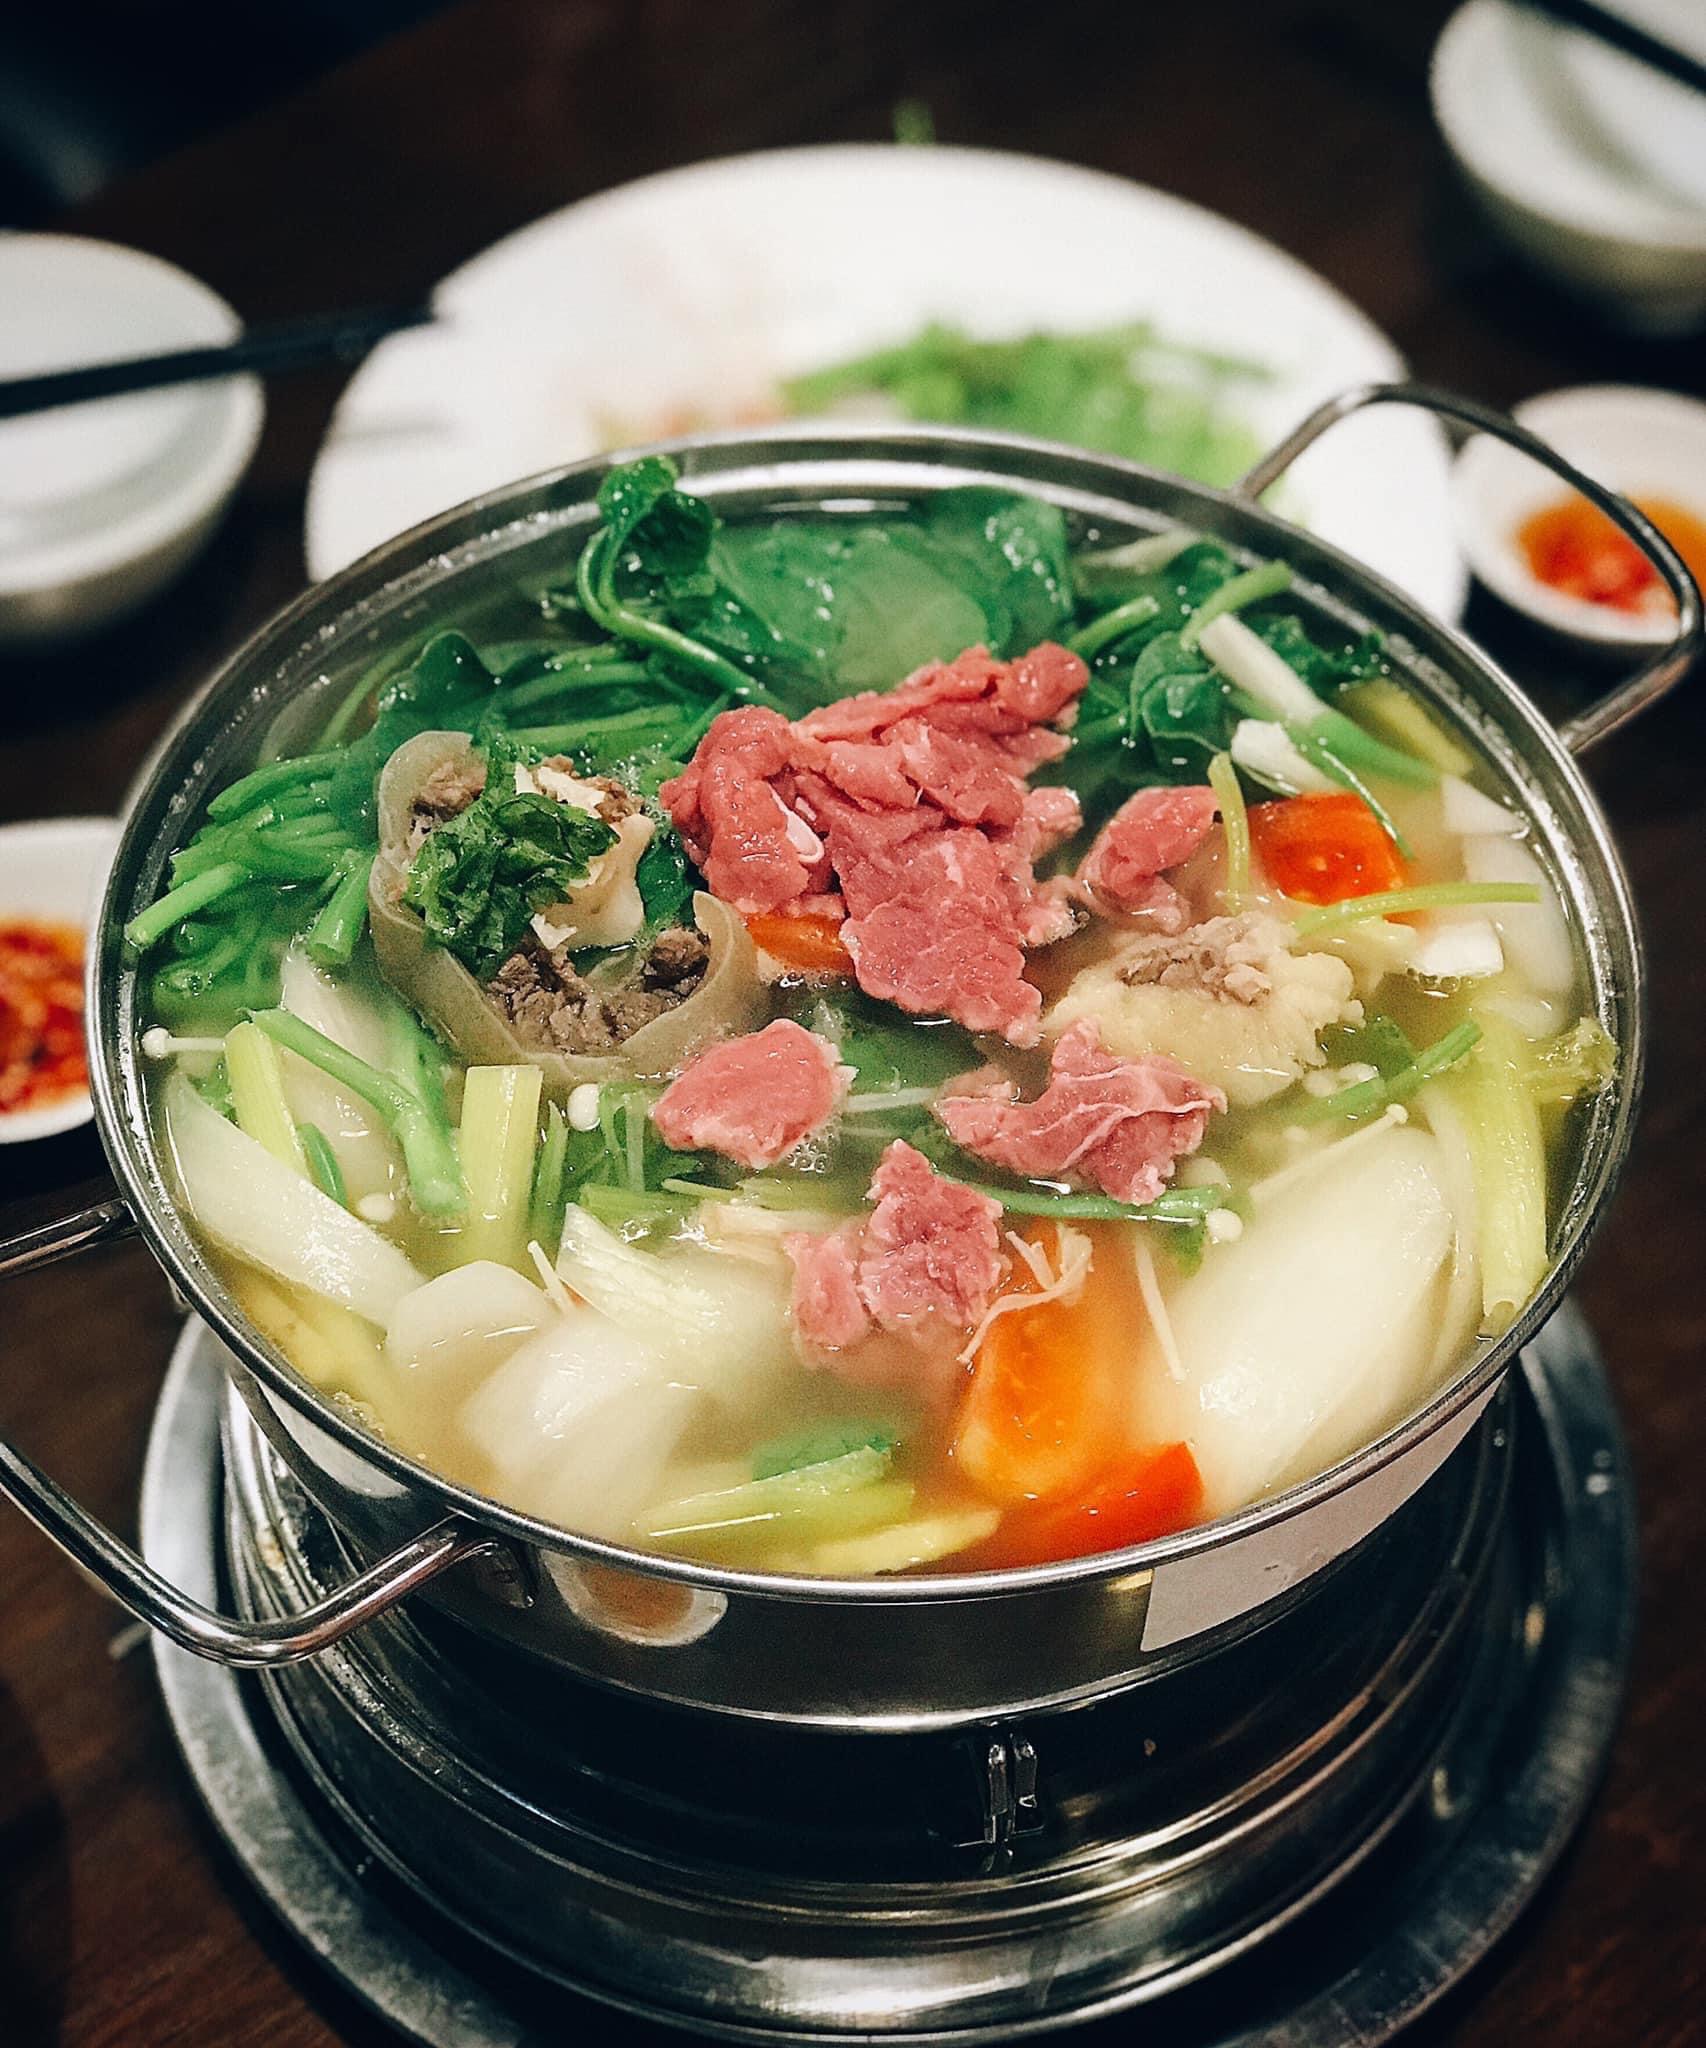 Top 10 quán ăn ngon nhất ở Nha Trang -  Phở
